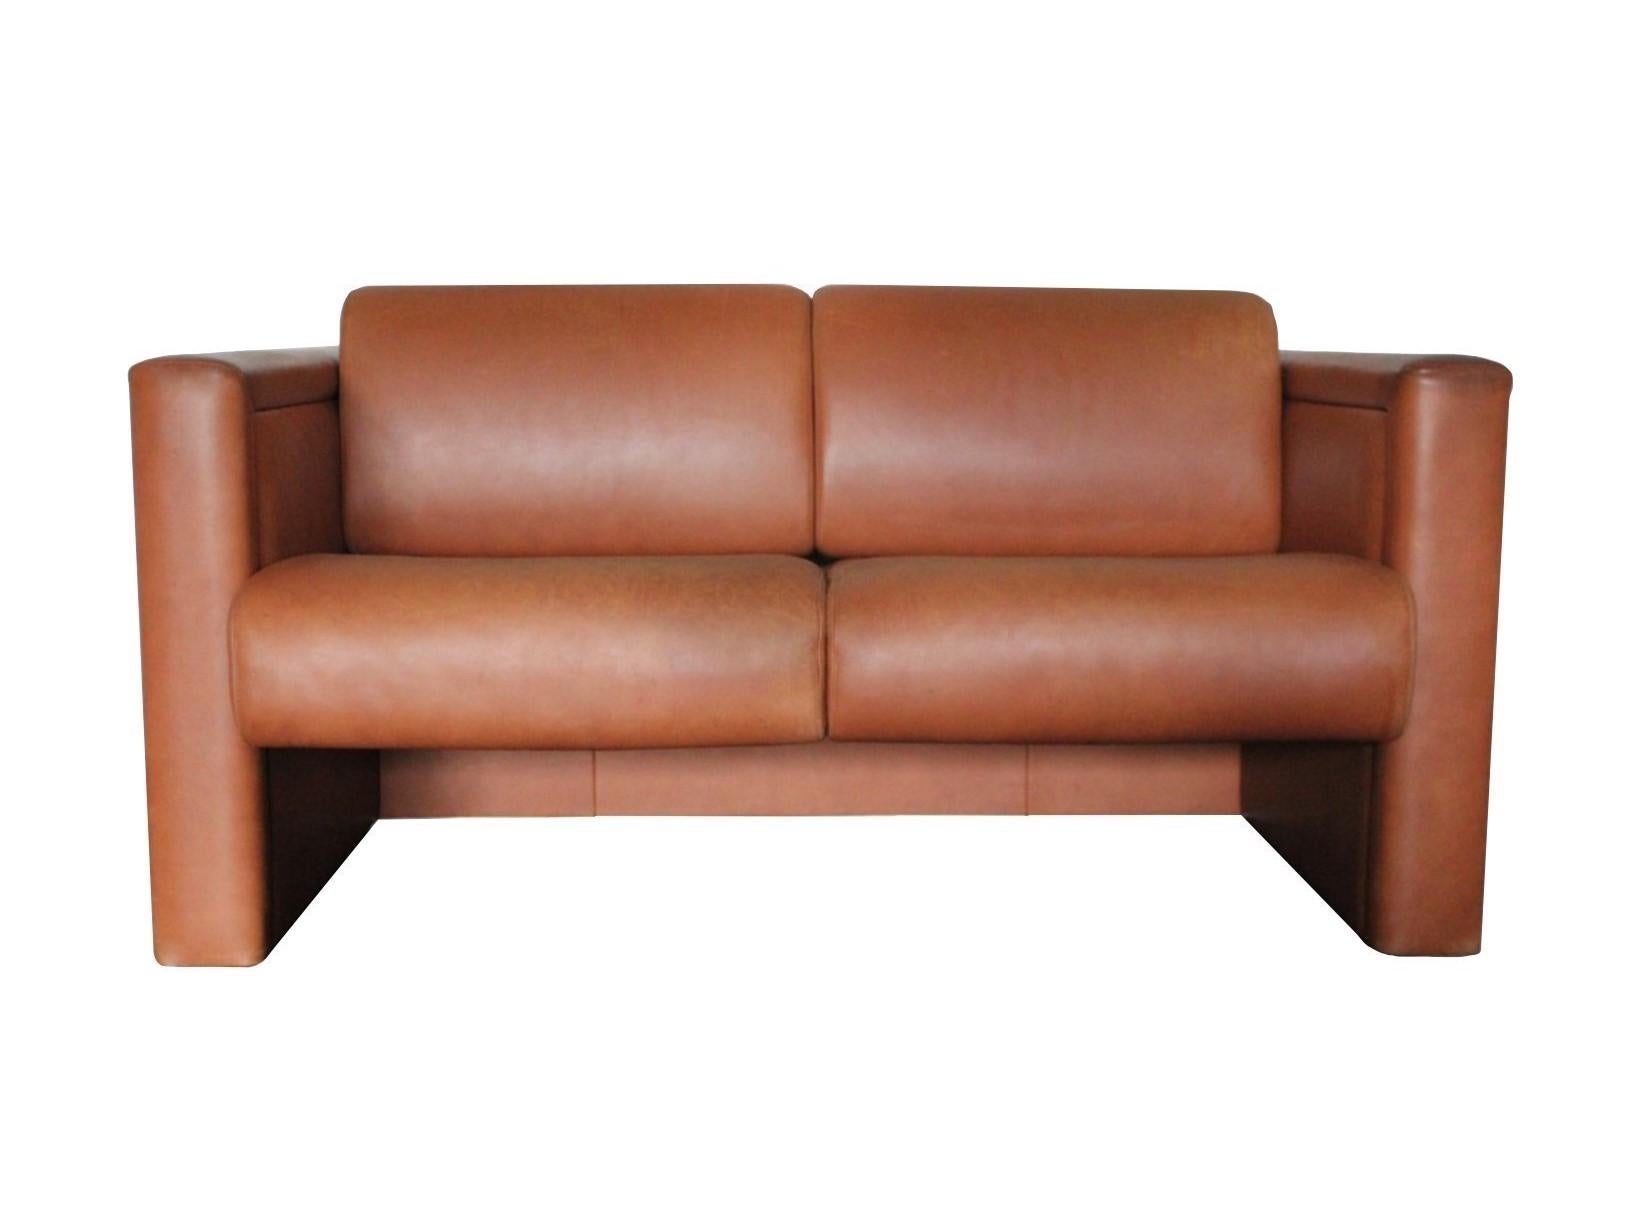 Ce design moderne iconique d'une qualité inégalée est un canapé de salon à 2 places conçu par Trix et Robert Haussmann et fabriqué par la maison de meubles de renommée mondiale, Knoll International. Le dossier et l'assise sont généreusement